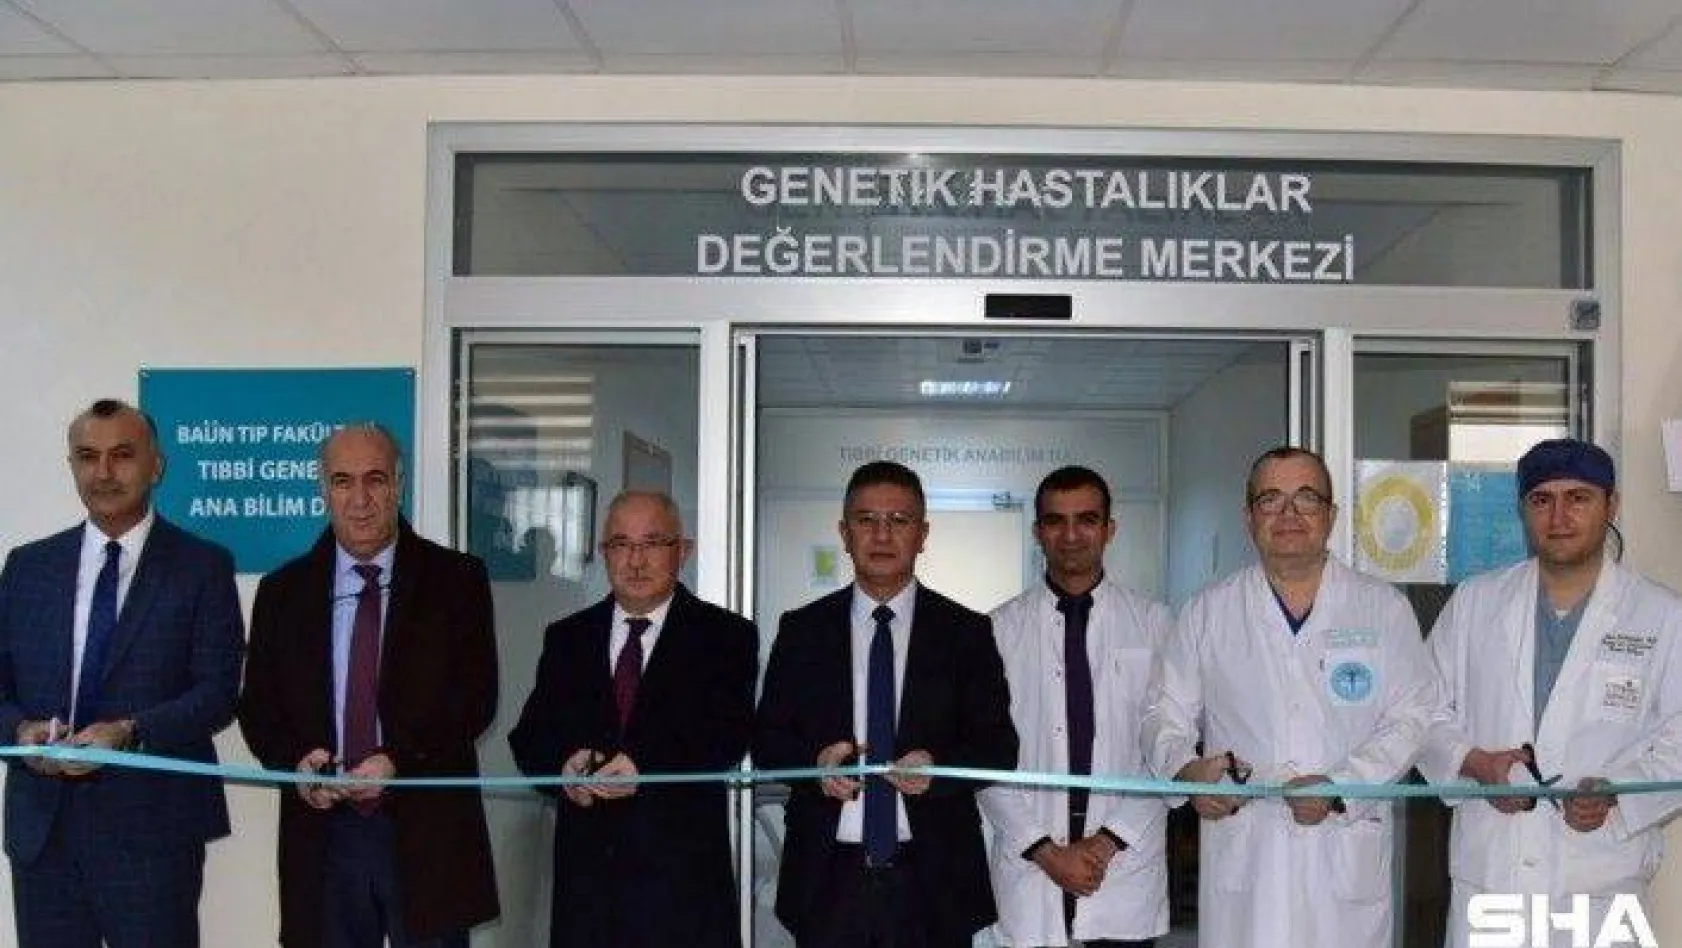 BAÜN Hastanesinde Genetik Hastalıklar Değerlendirme Merkezi açıldı